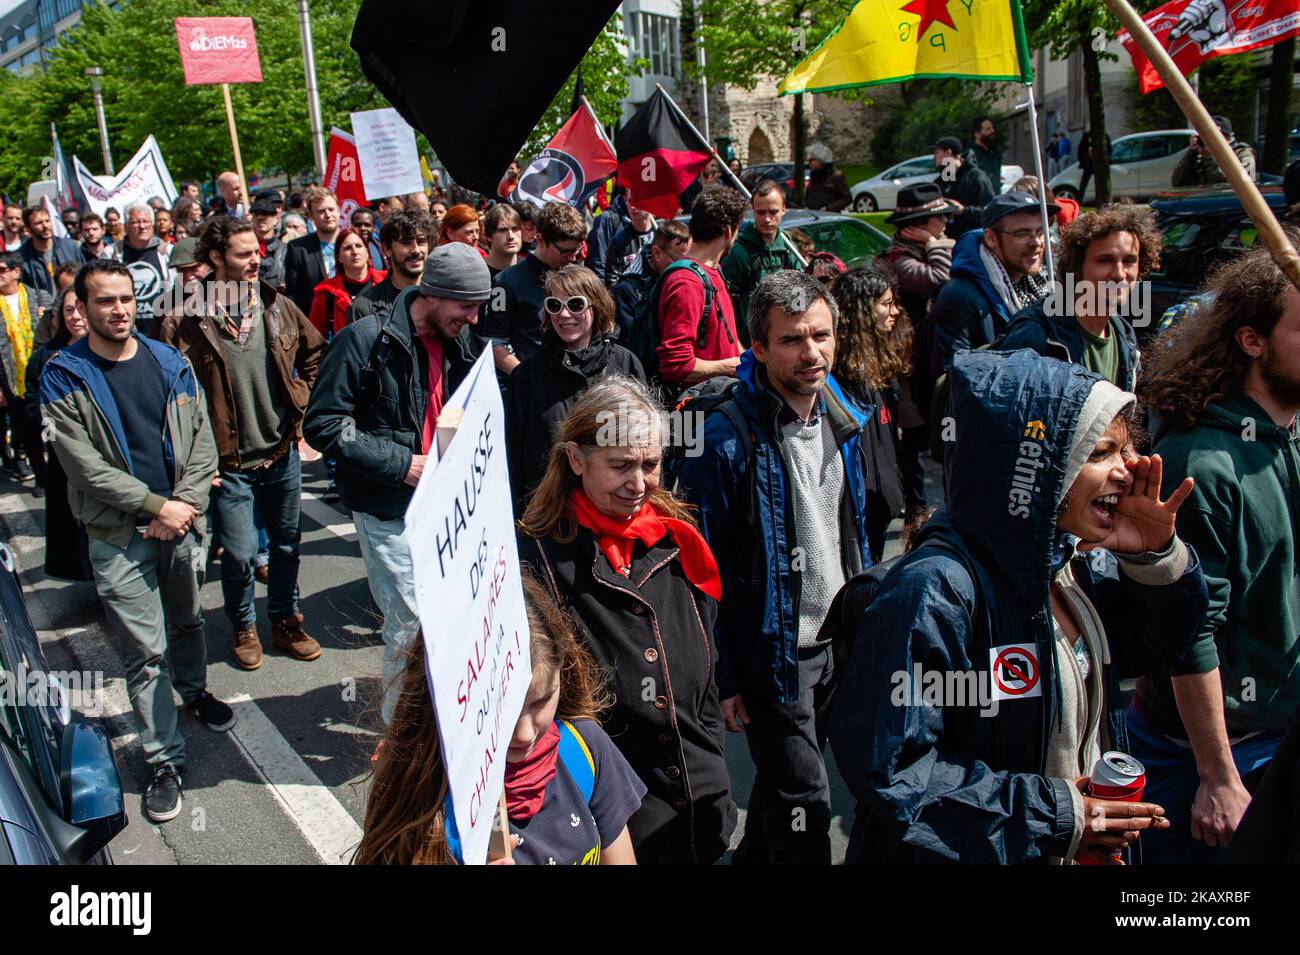 Am 1.. Mai 2018 versammelten sich mehrere Gewerkschafter auf dem Place Poelaert, der näher am Justizpalast in Brüssel, Belgien, liegt. Die Demostration marschierte auf dem Platz Rouppe in Brüssel, um für menschenwürdige Arbeitsbedingungen und ihre Rechte als Arbeitnehmer zu kämpfen. Mit dieser massiven Demonstration wollen tausende Menschen neue Rechte erobern, wie Gehaltserhöhungen, Regularisierung mit oder ohne Papiere, Sexismus und Rassismus stoppen usw. (Foto: Romy Arroyo Fernandez/NurPhoto) Stockfoto